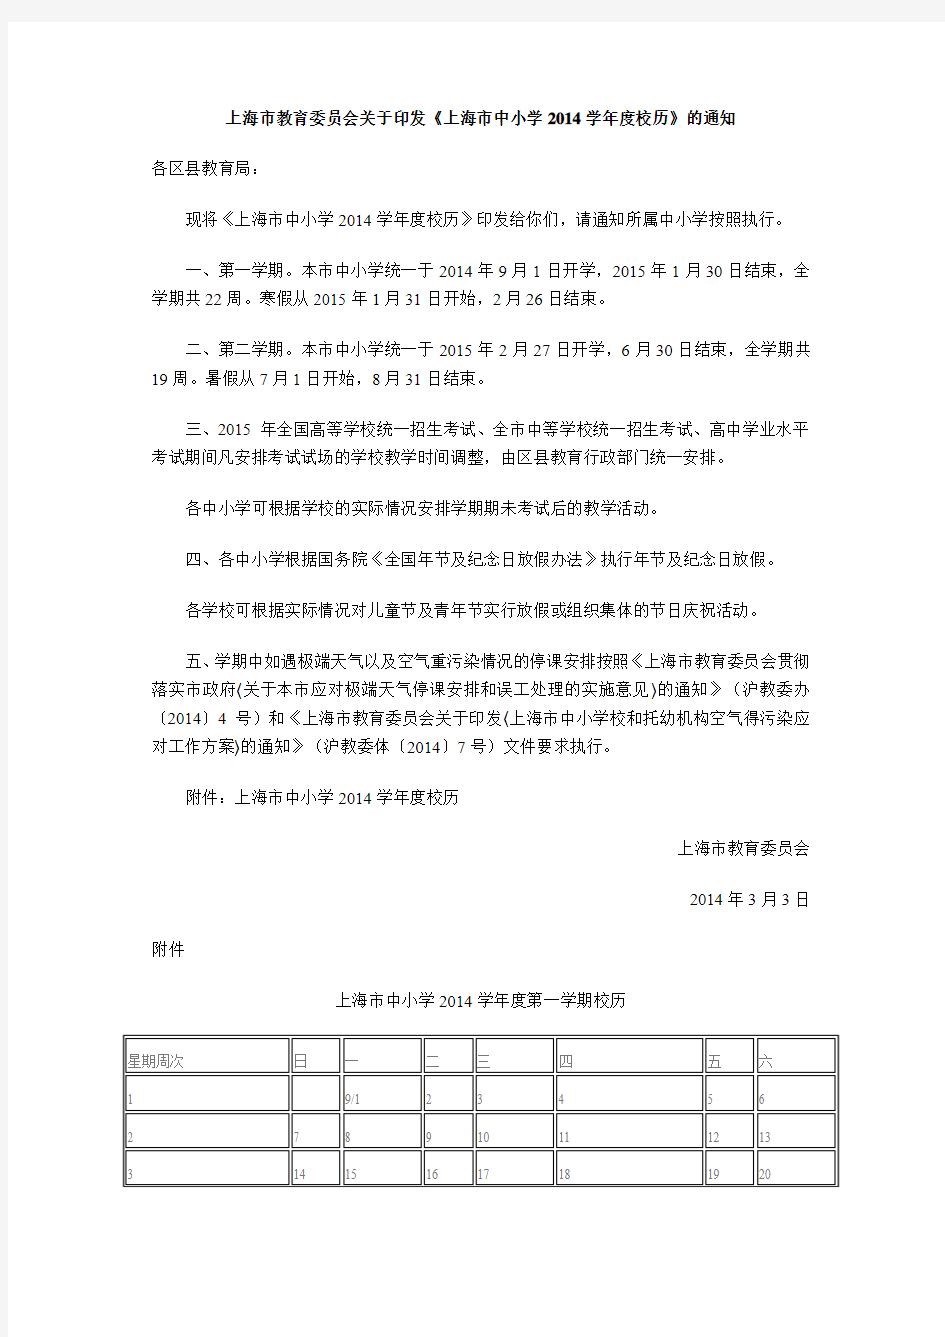 上海市中小学2014-2015学年度校历